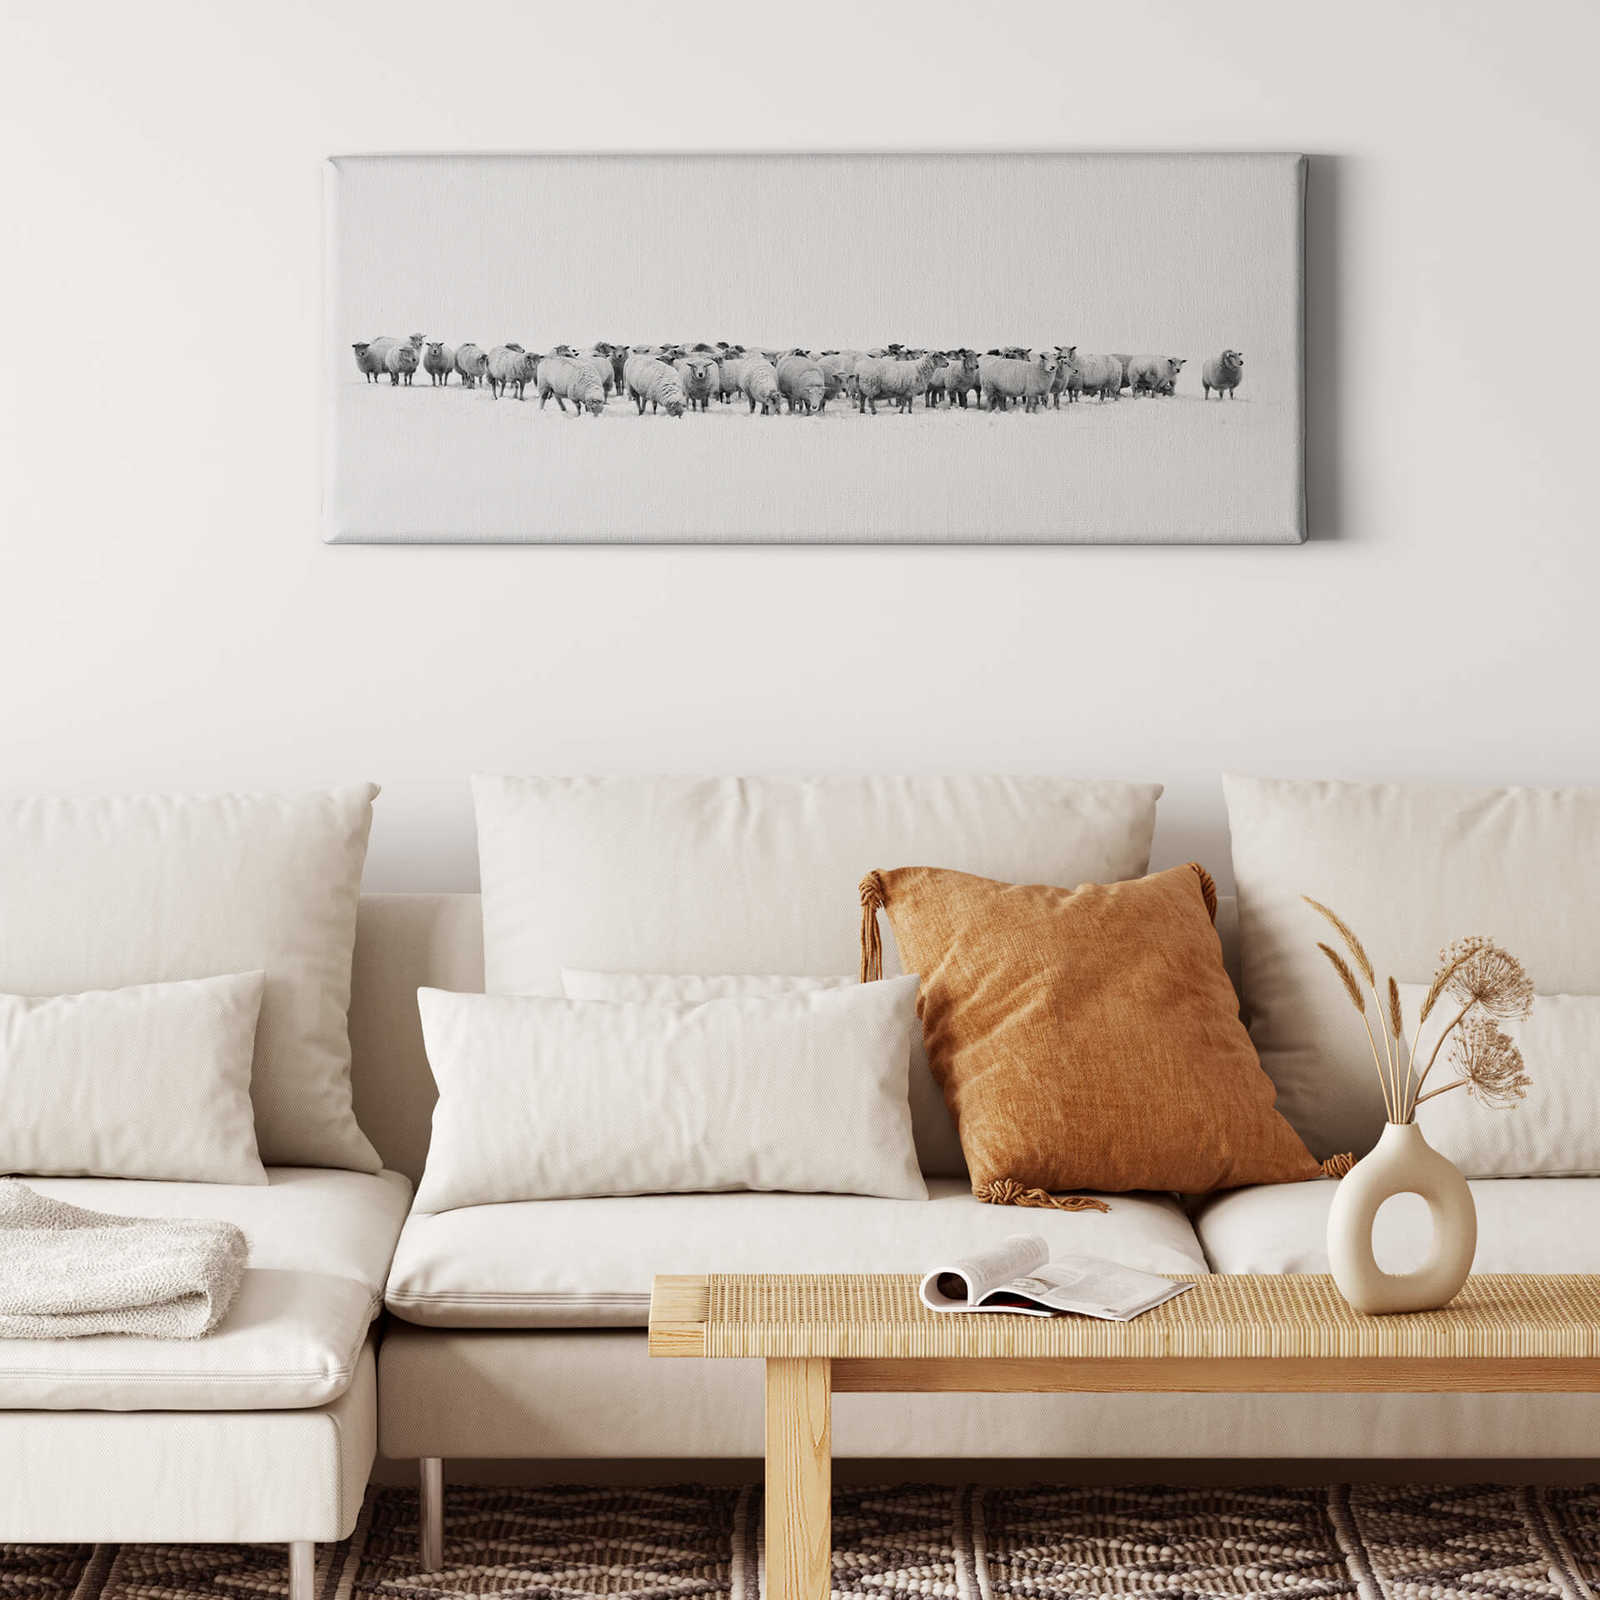             Tableau panoramique sur toile Troupeau de moutons en blanc - 1,00 m x 0,40 m
        